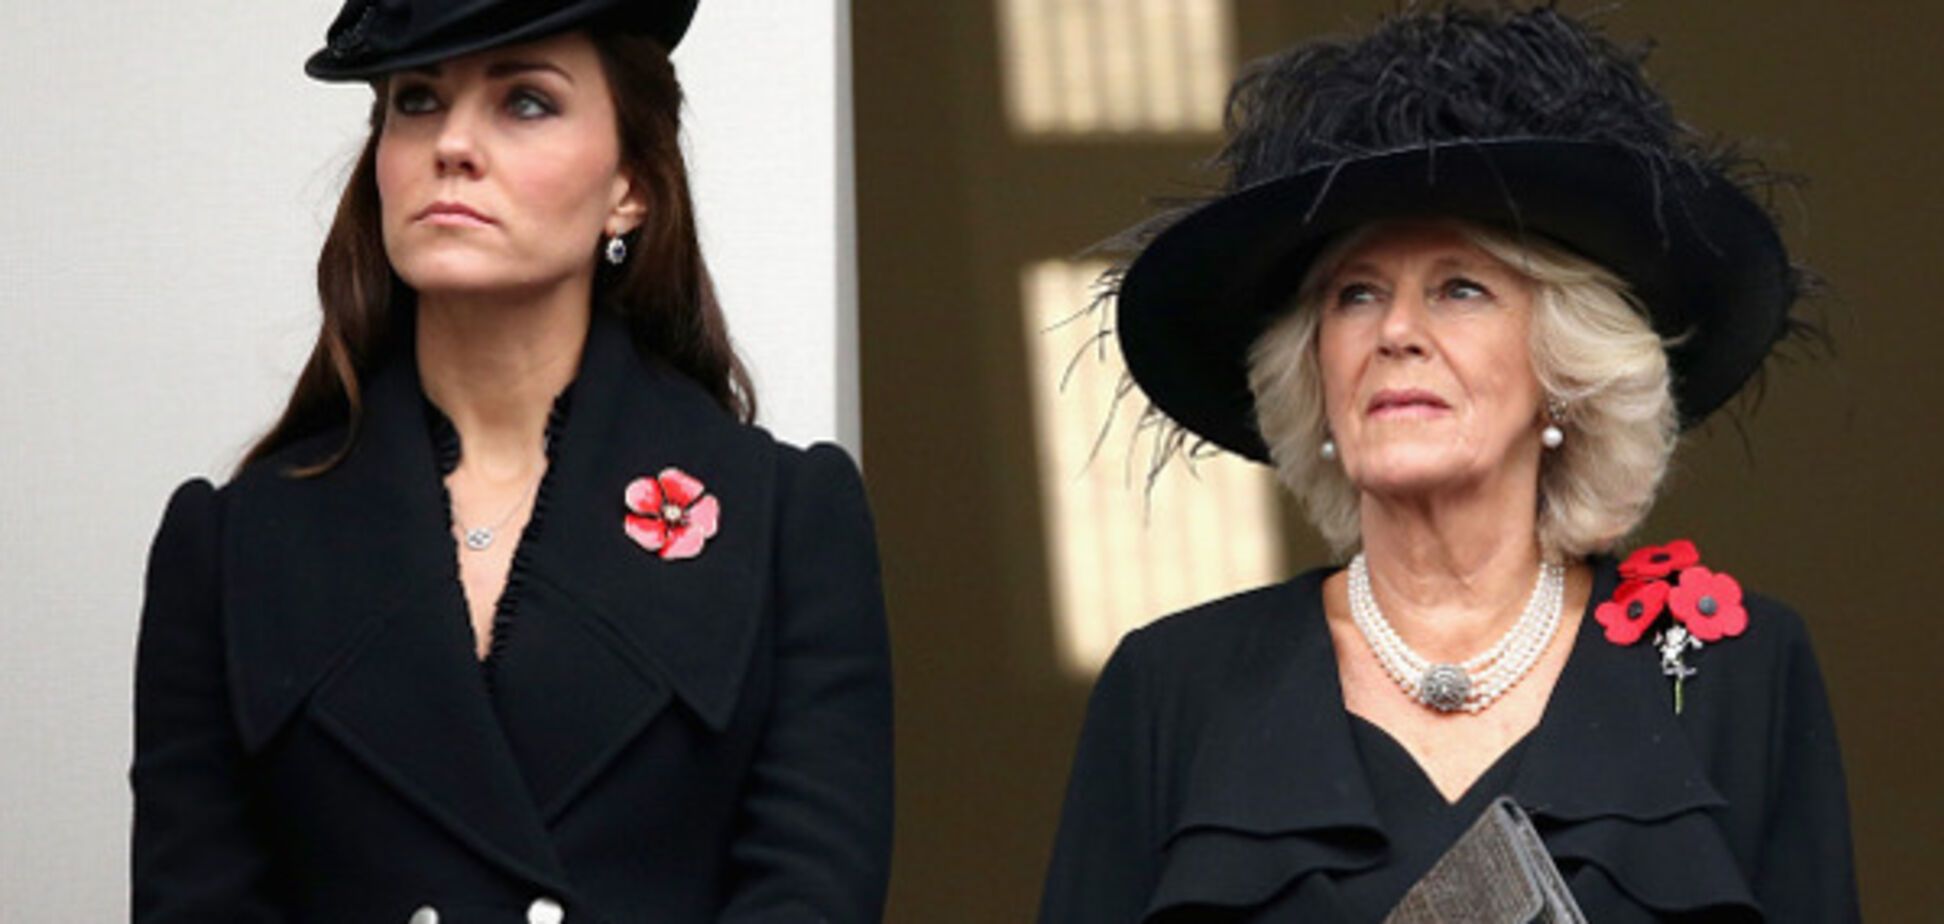 Отношения разорваны: в королевской семье Британии разгорелся скандал